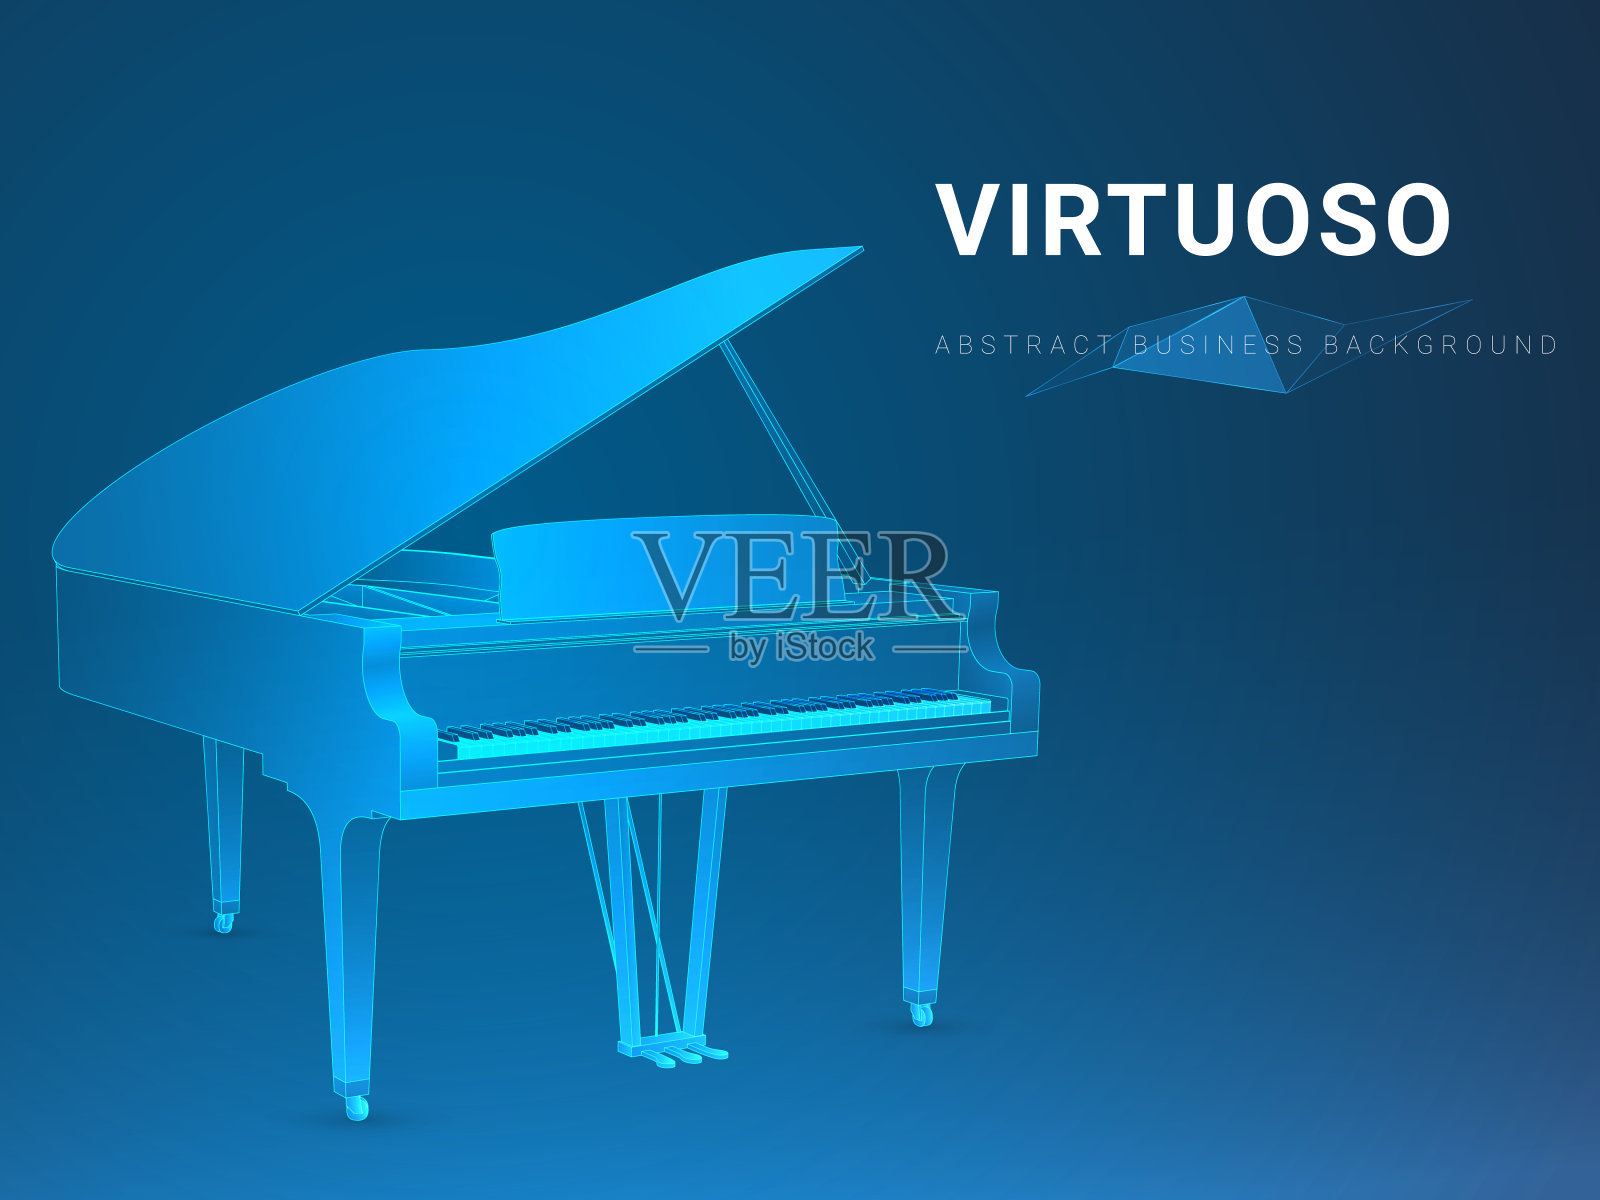 抽象的现代商业背景向量描绘了一个在蓝色背景上打开的大钢琴形状的大师。插画图片素材